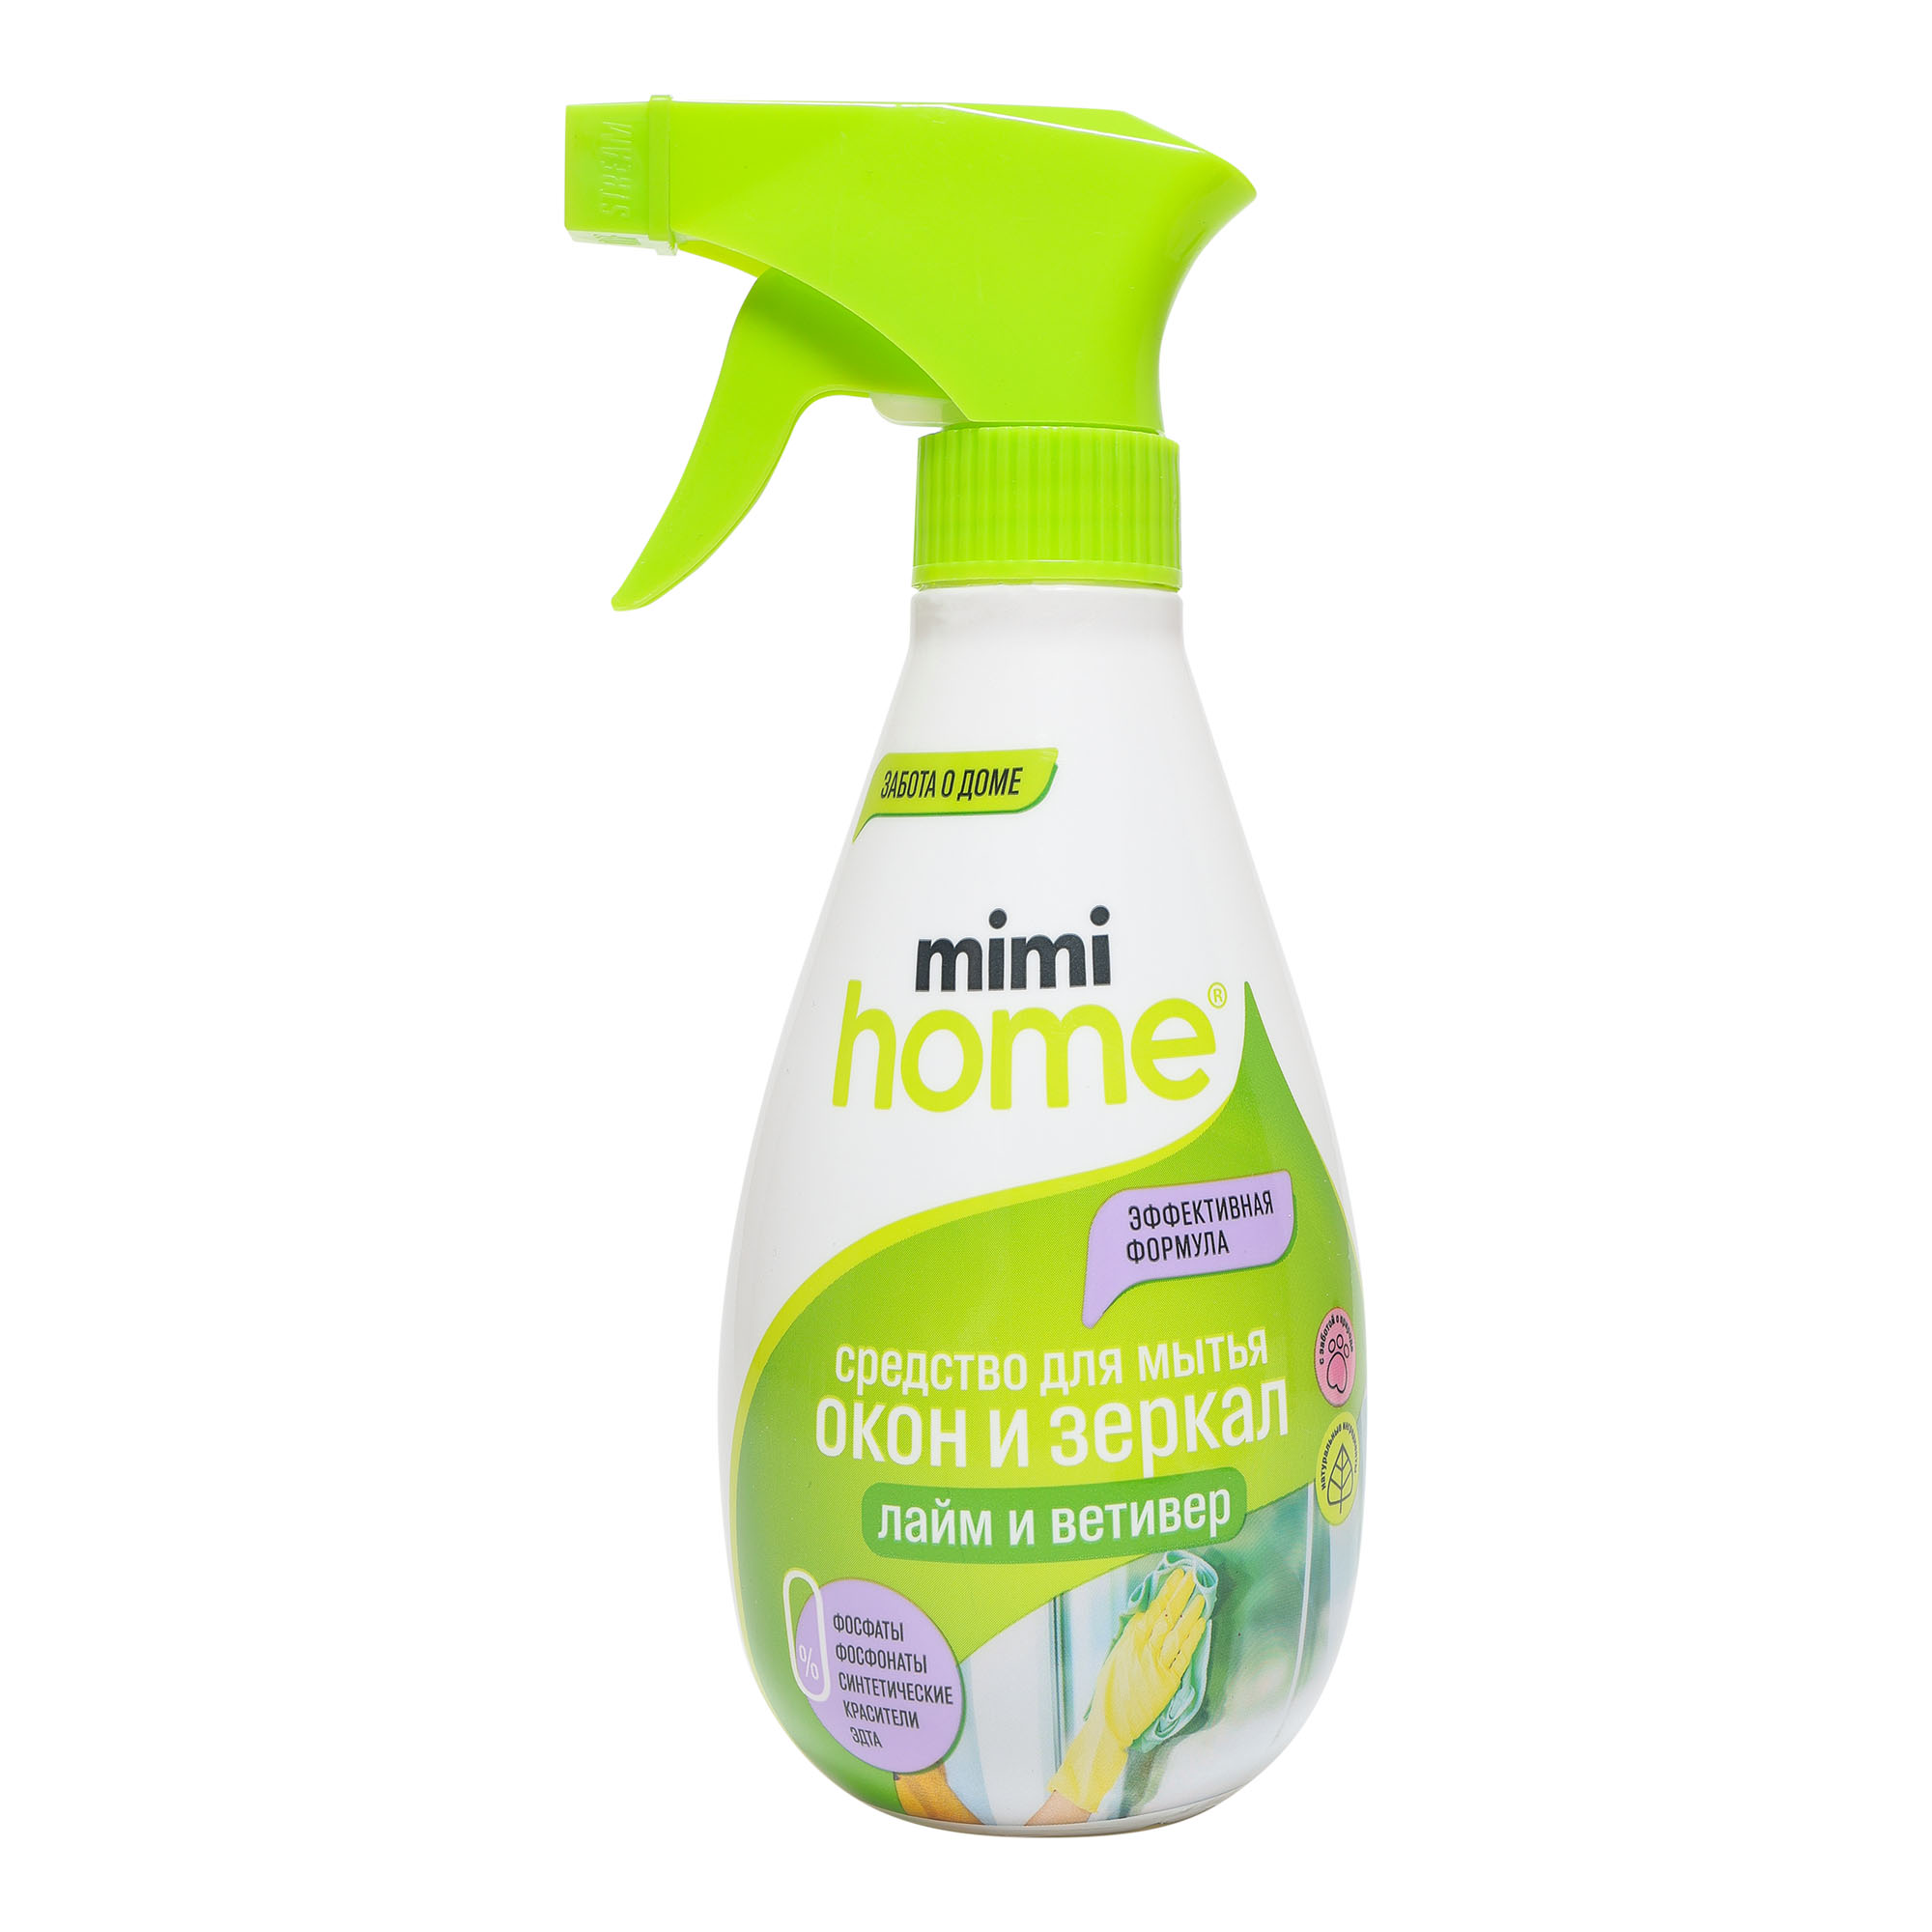 Средство для мытья окон и зеркал Mimi Home 370 мл моющее средство для мрамора и натурального камня hg